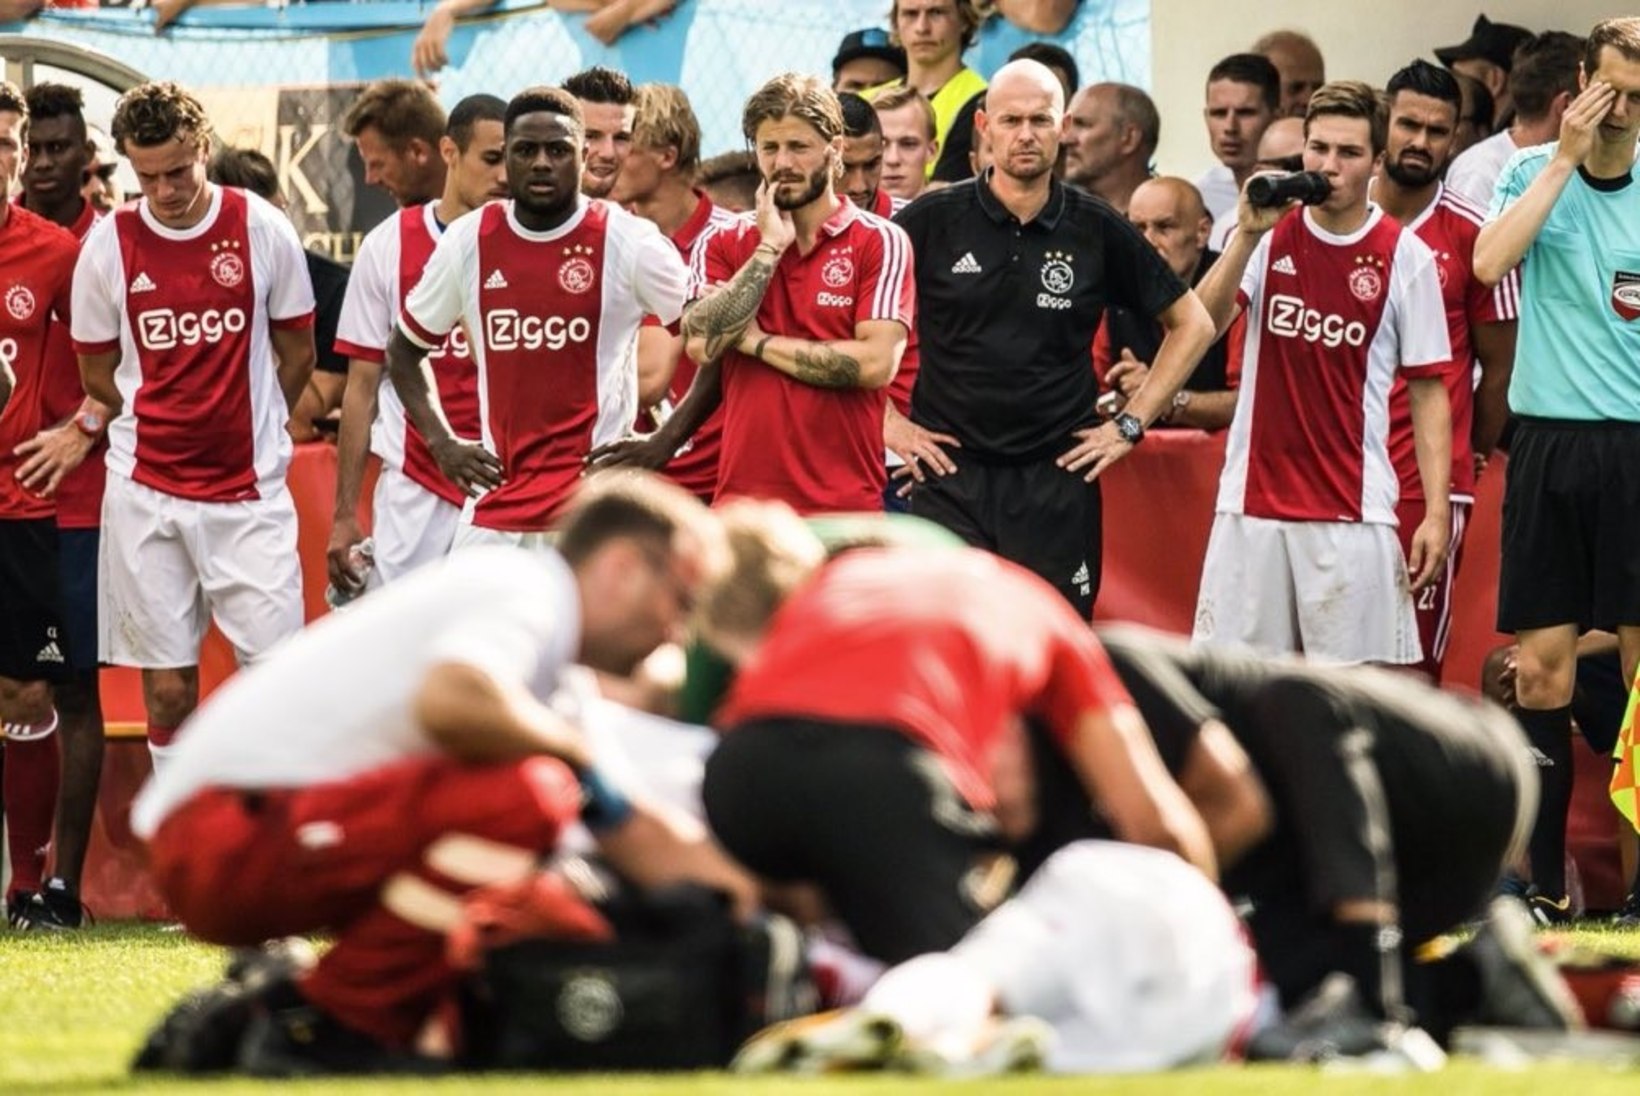 Keset vutimatši kokku kukkunud Ajaxi jalgpalluri elu enam ohus pole